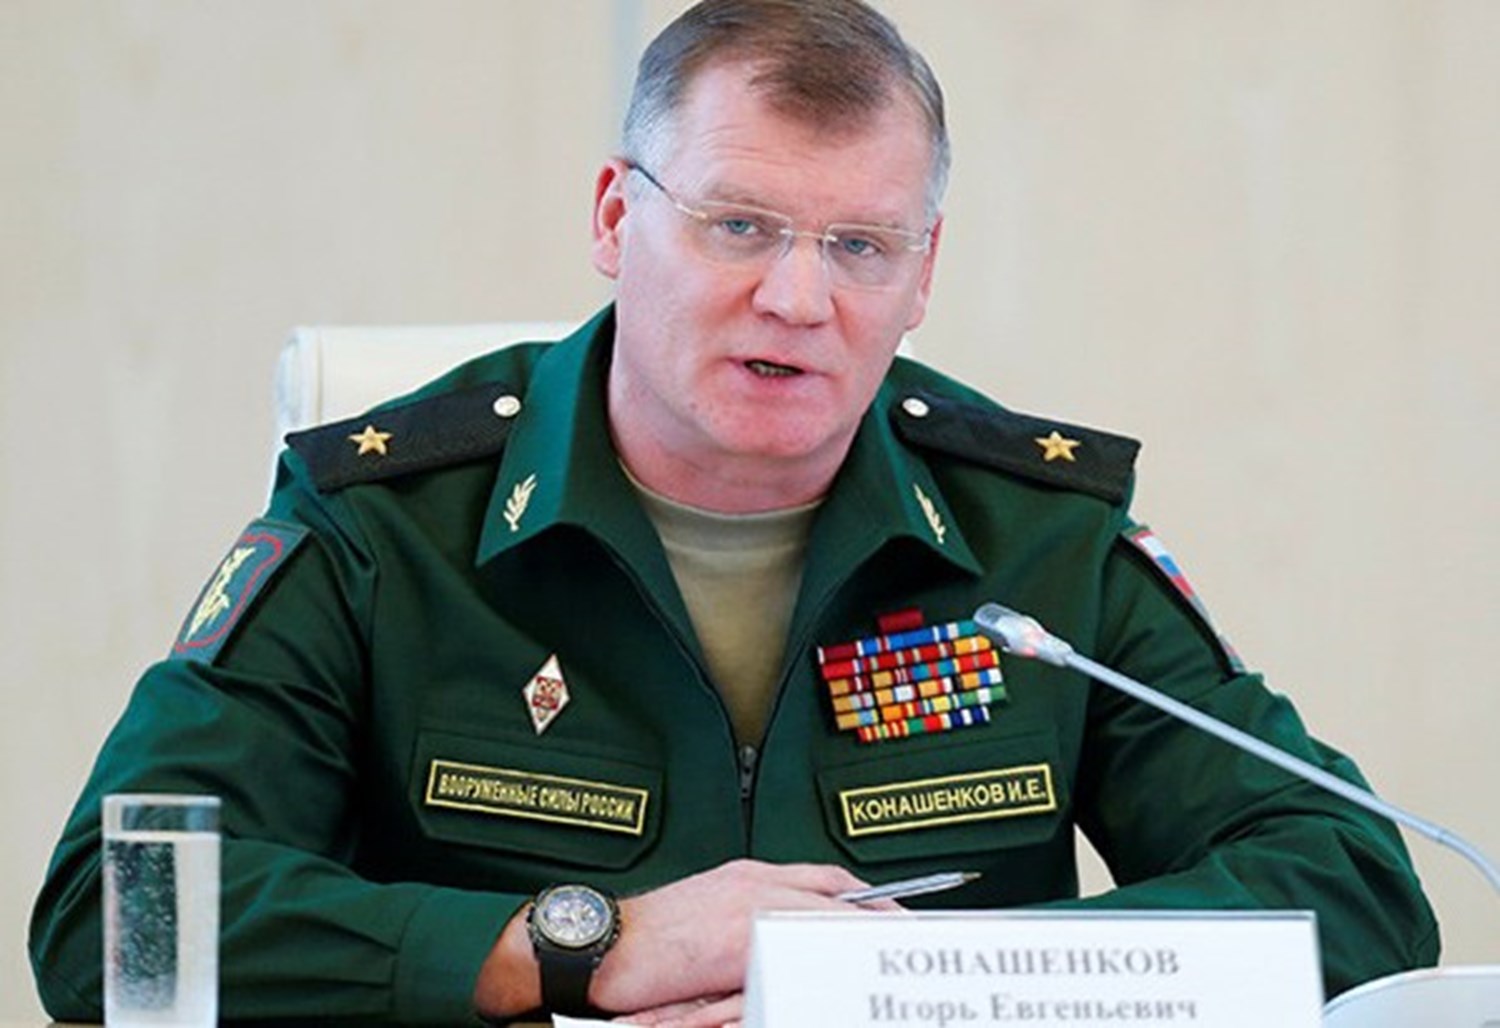 Igor-Konashenkov Russian Defense Ministry spokesman